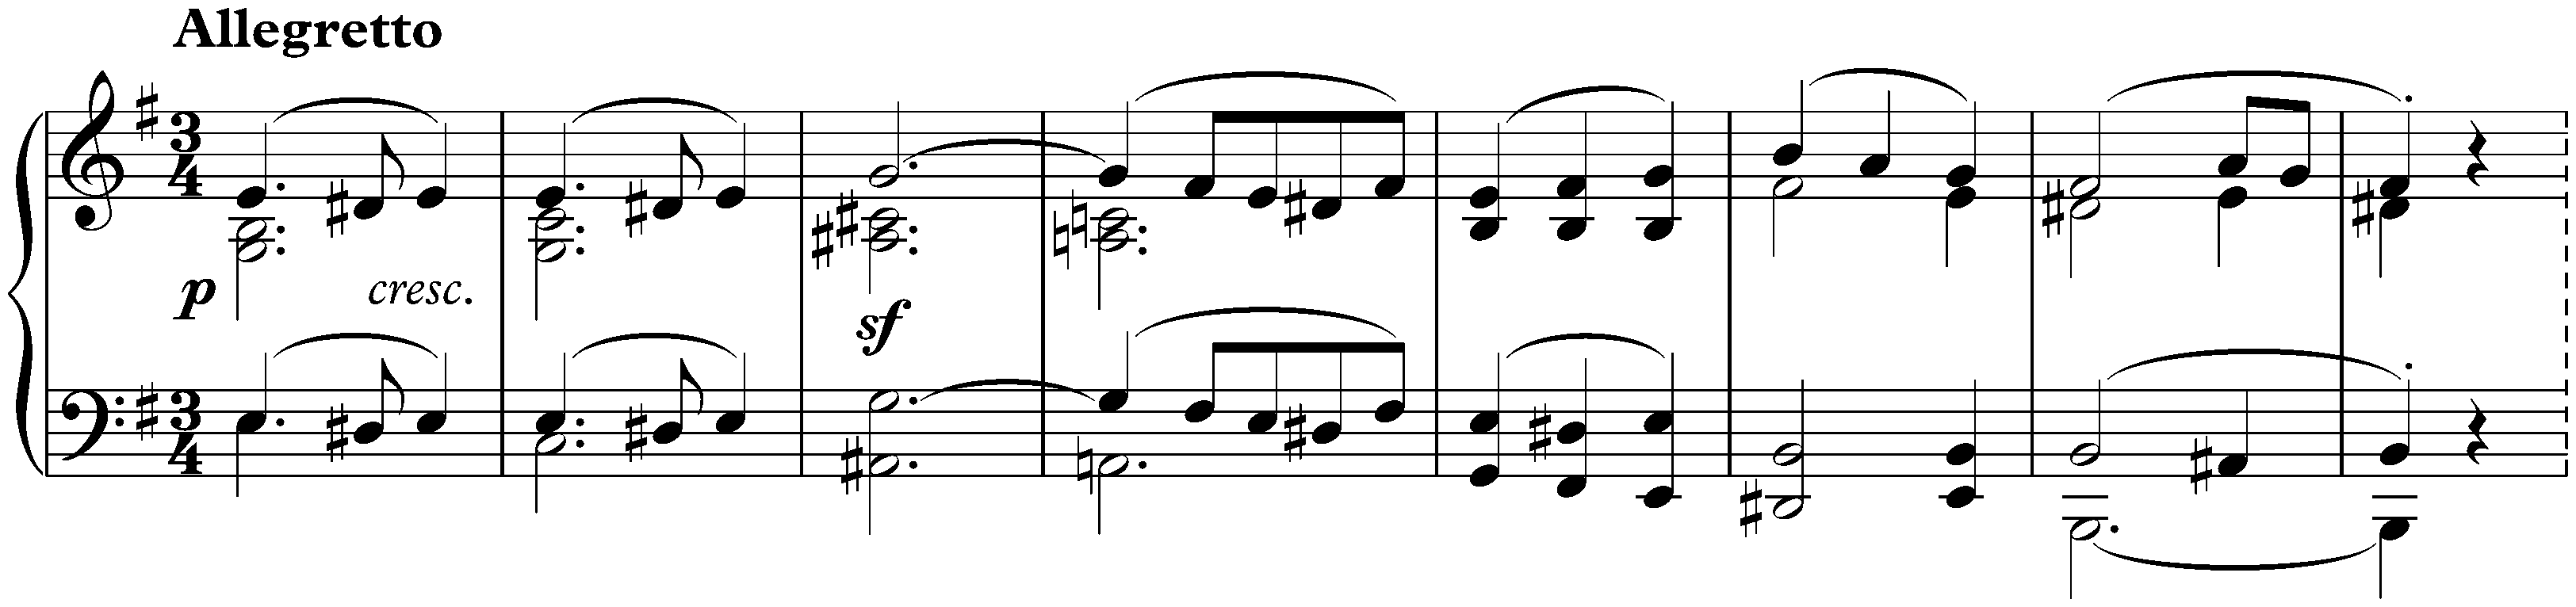 Sonata no. 9 in E major, op. 14 no. 1; 2. Allegretto